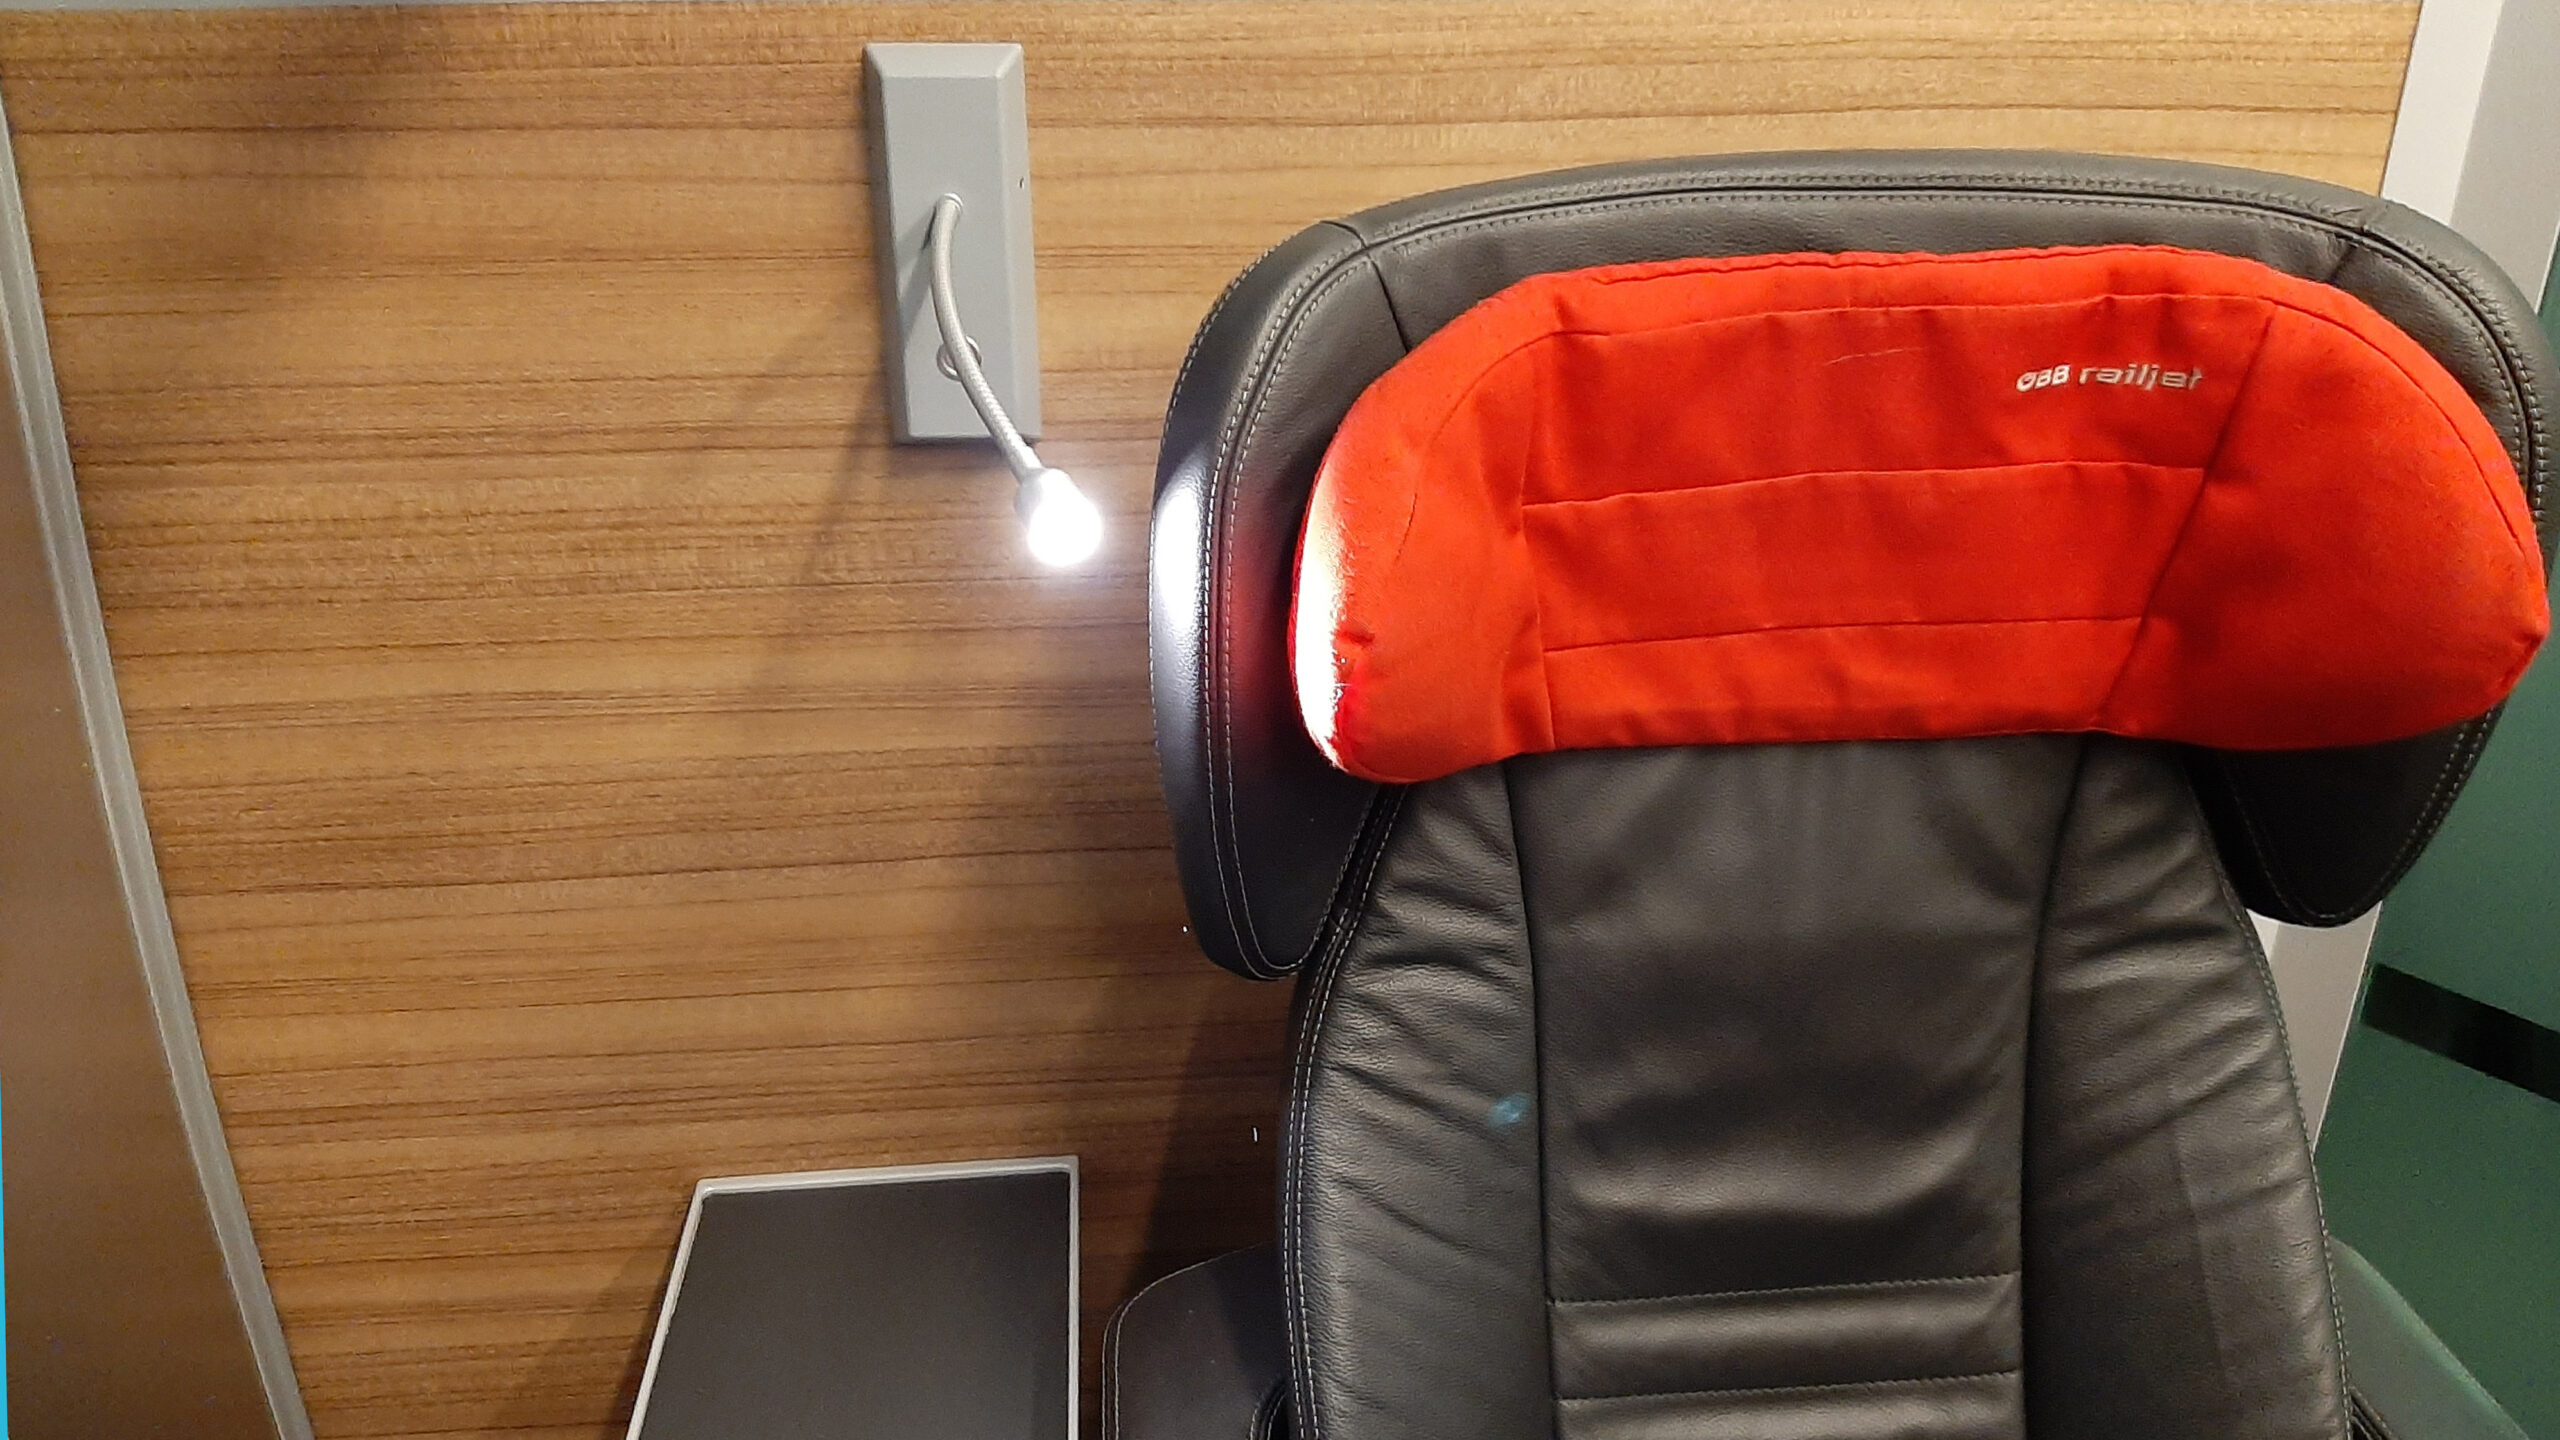 New Reading Light for more passenger comfort